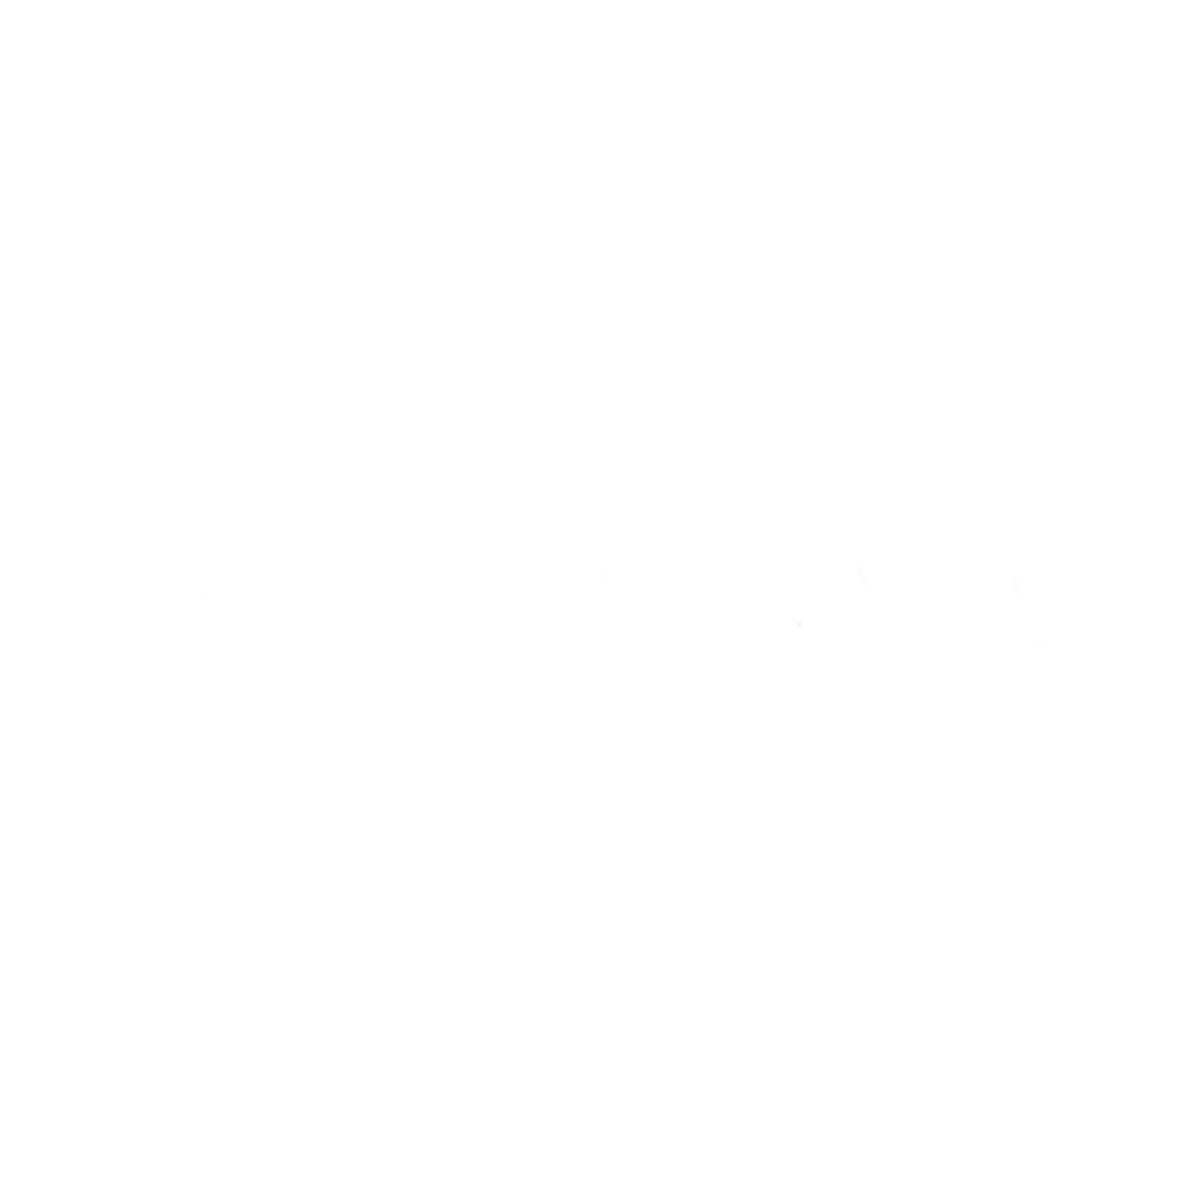 APC Oaxaca